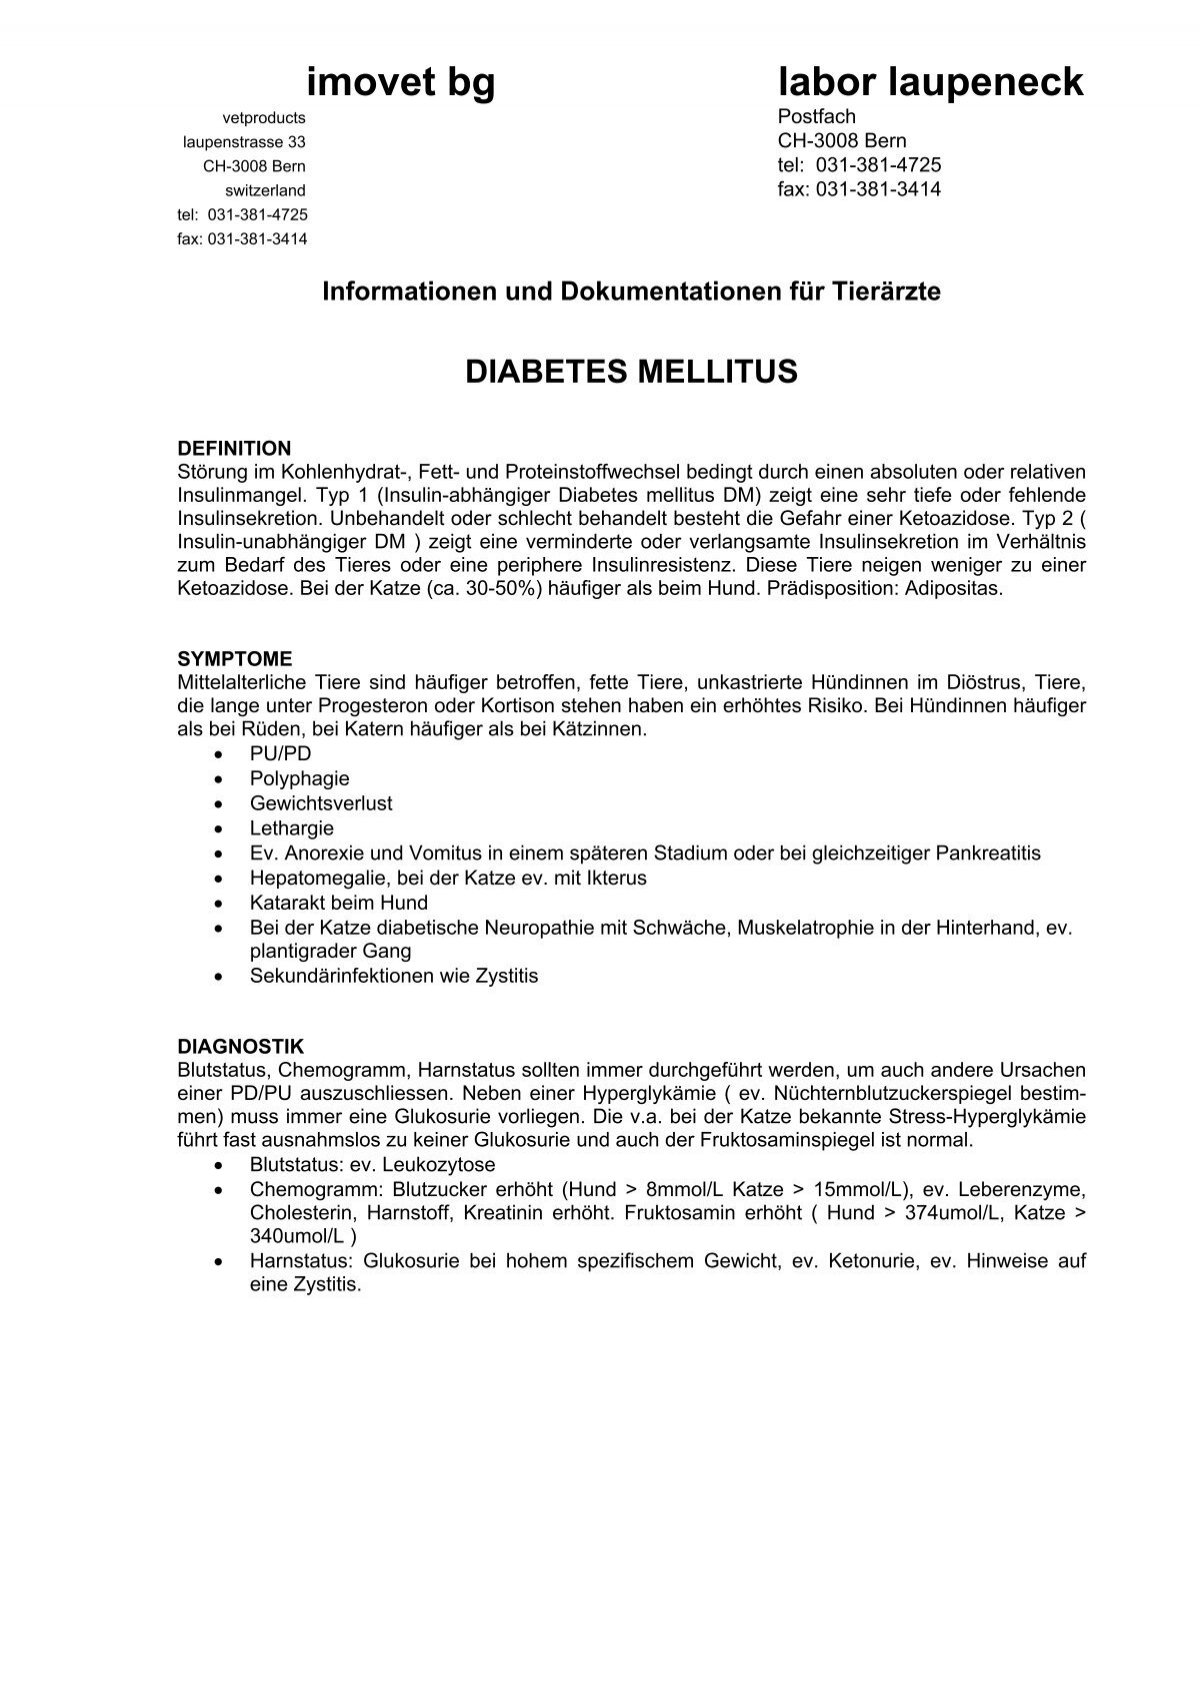 Diabetes mellitus - Labor Laupeneck